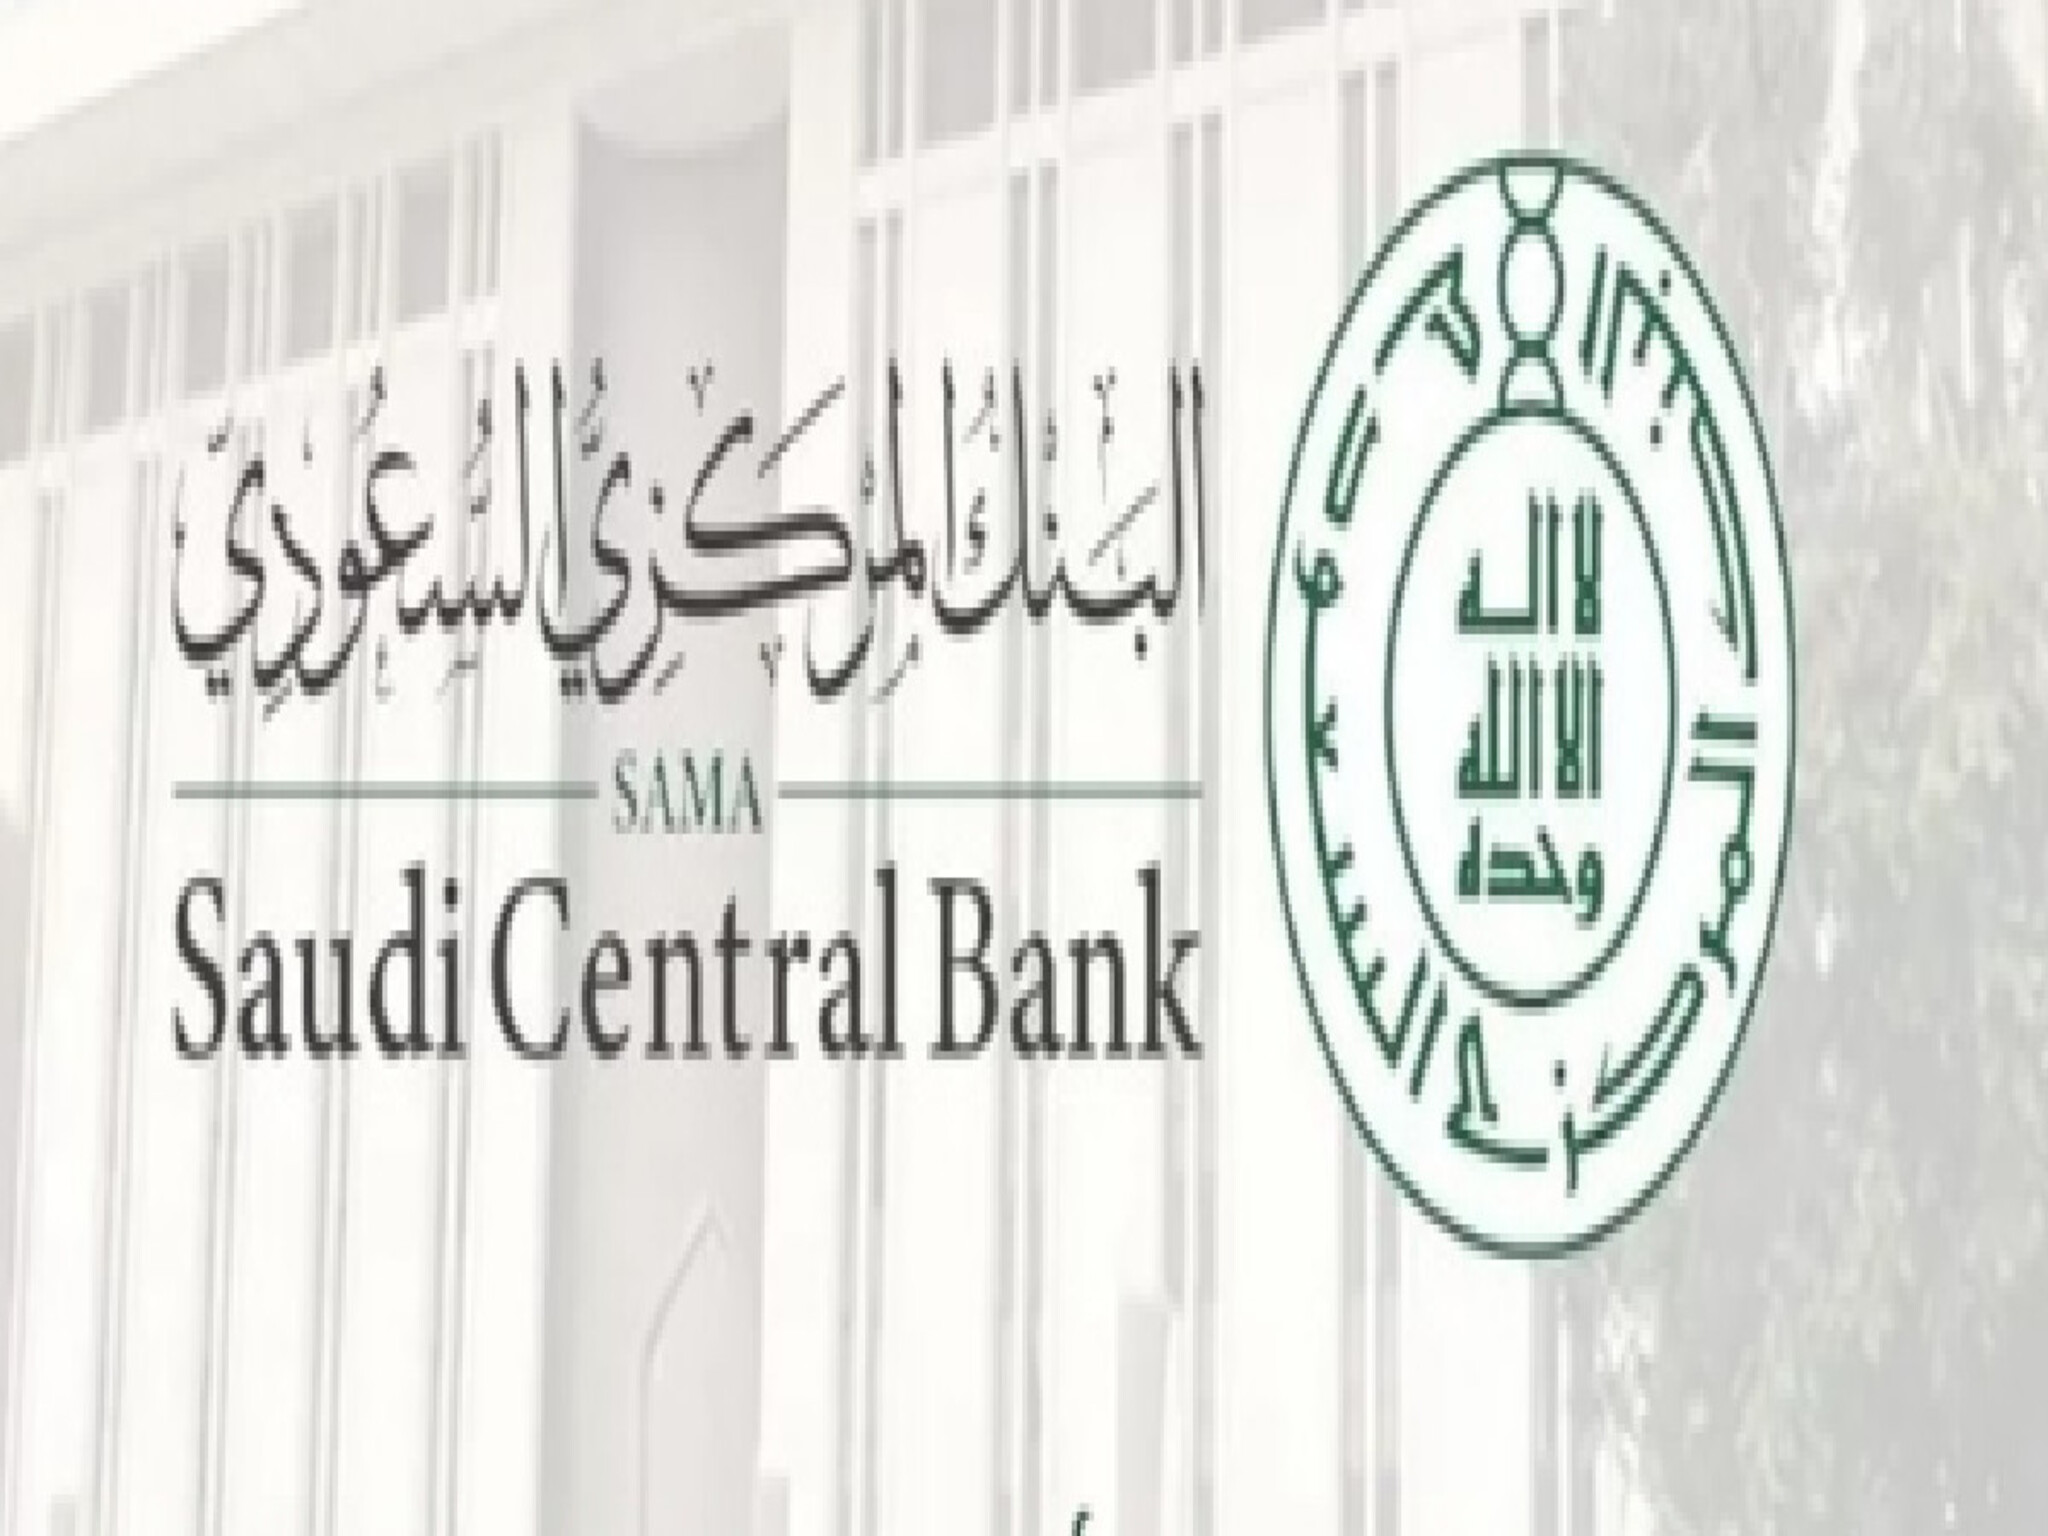 البنك المركزي السعودي يتيح استخدام بطاقة الصراف الآلي للحجاج من بلادهم..لأول مرة